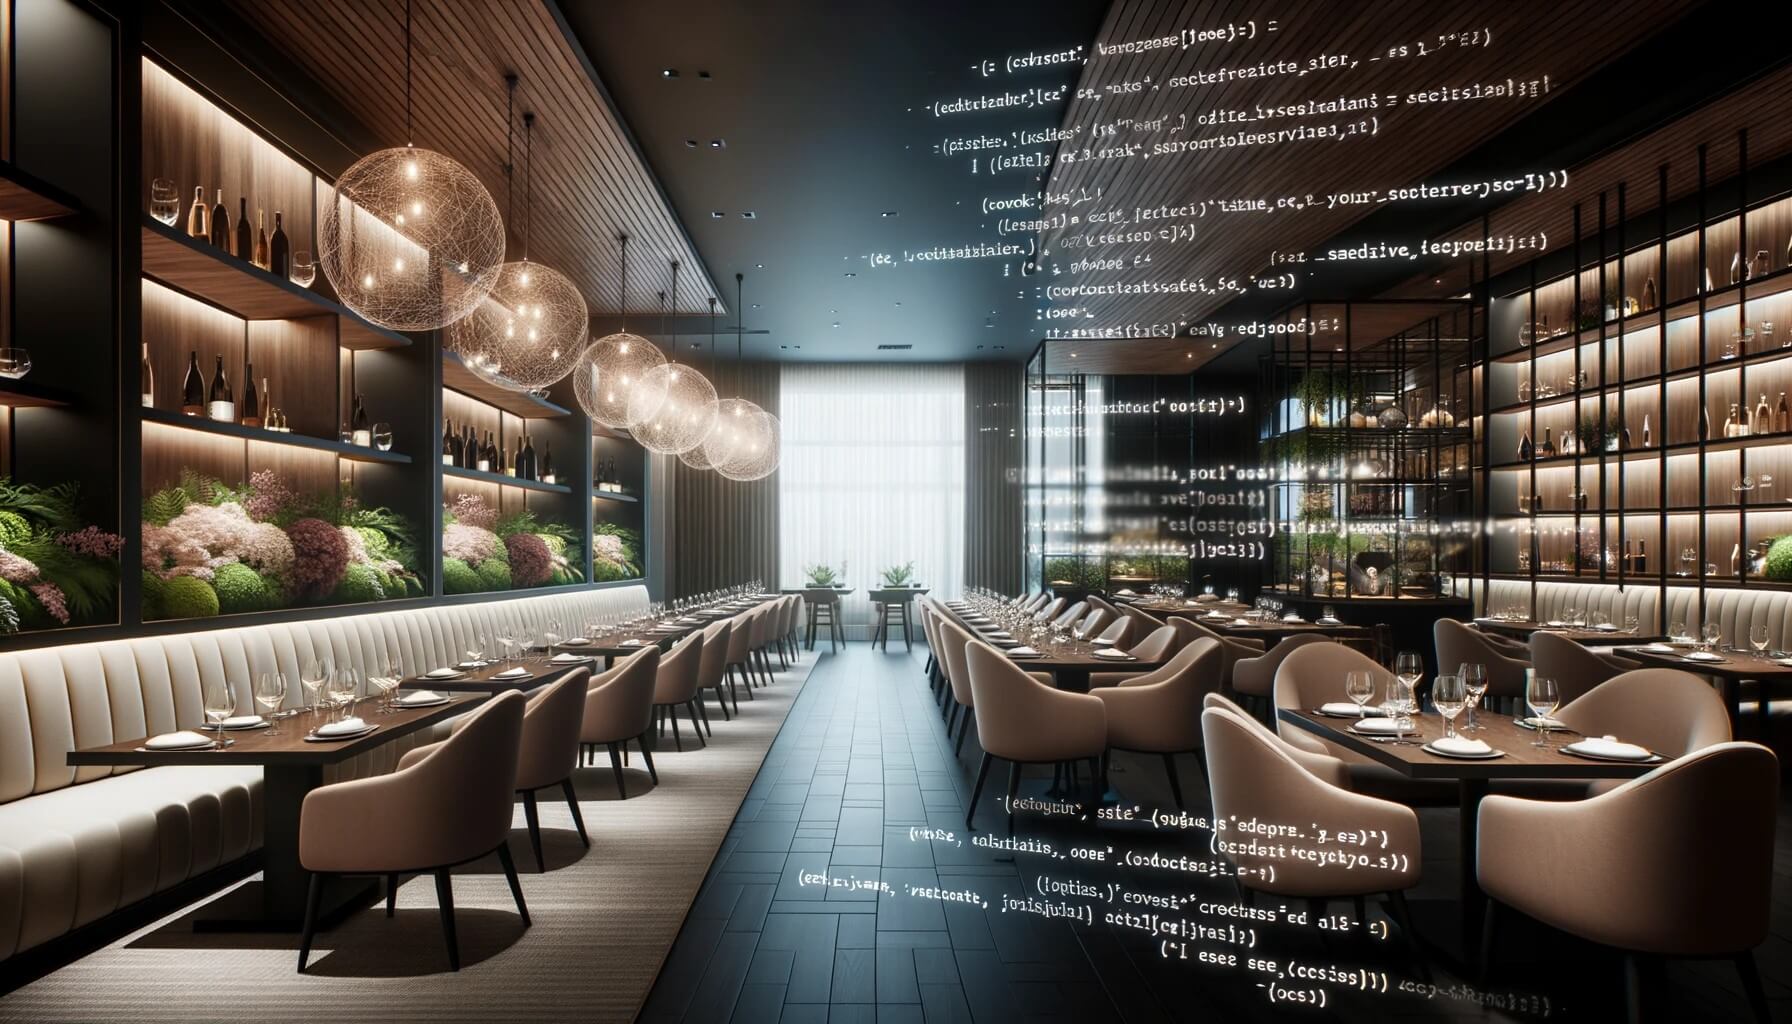 Restaurante contemporáneo con mobiliario sofisticado. La mitad cubierta con javascript transparente simboliza el uso de la IA en la hostelería.